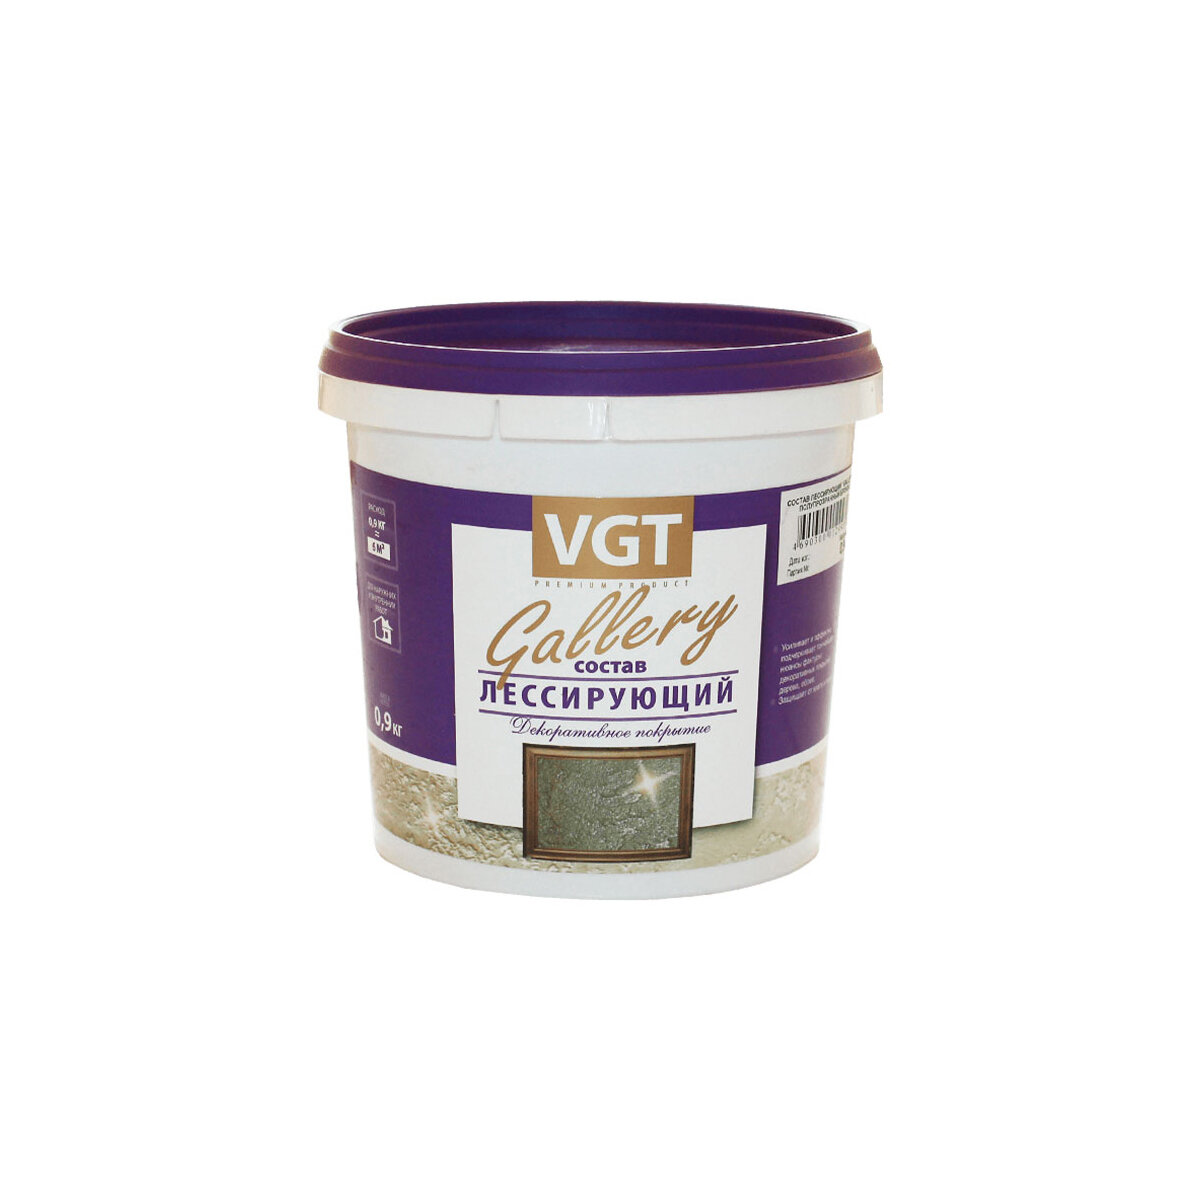 VGT GALLERY лессирующий состав полупрозрачный для декоративных штукатурок серебристо-белый (09кг)